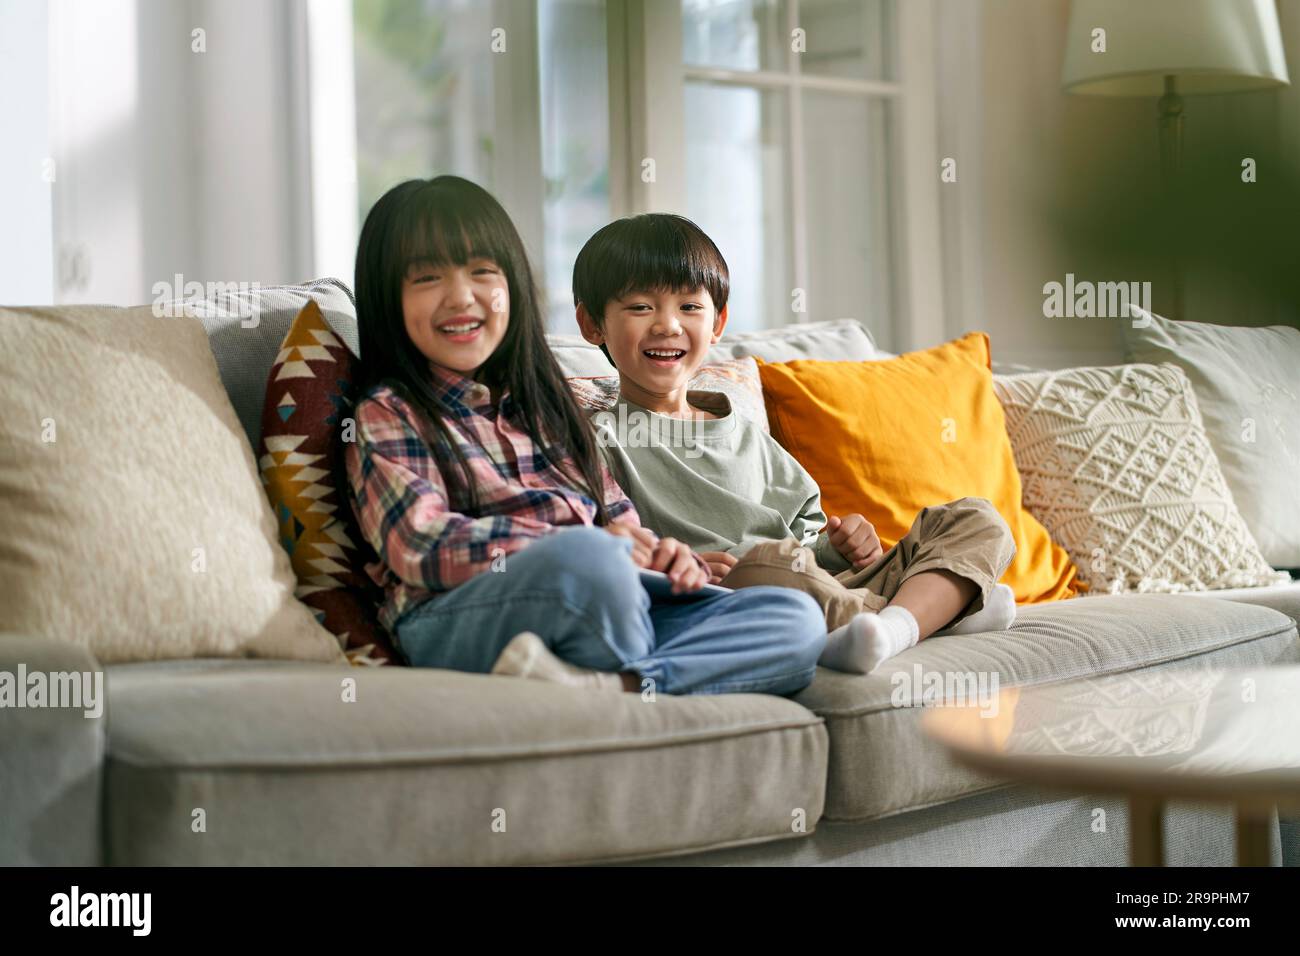 portrait de deux enfants asiatiques frère et soeur assis sur un canapé de famille à la maison regardant l'appareil photo sourire Banque D'Images